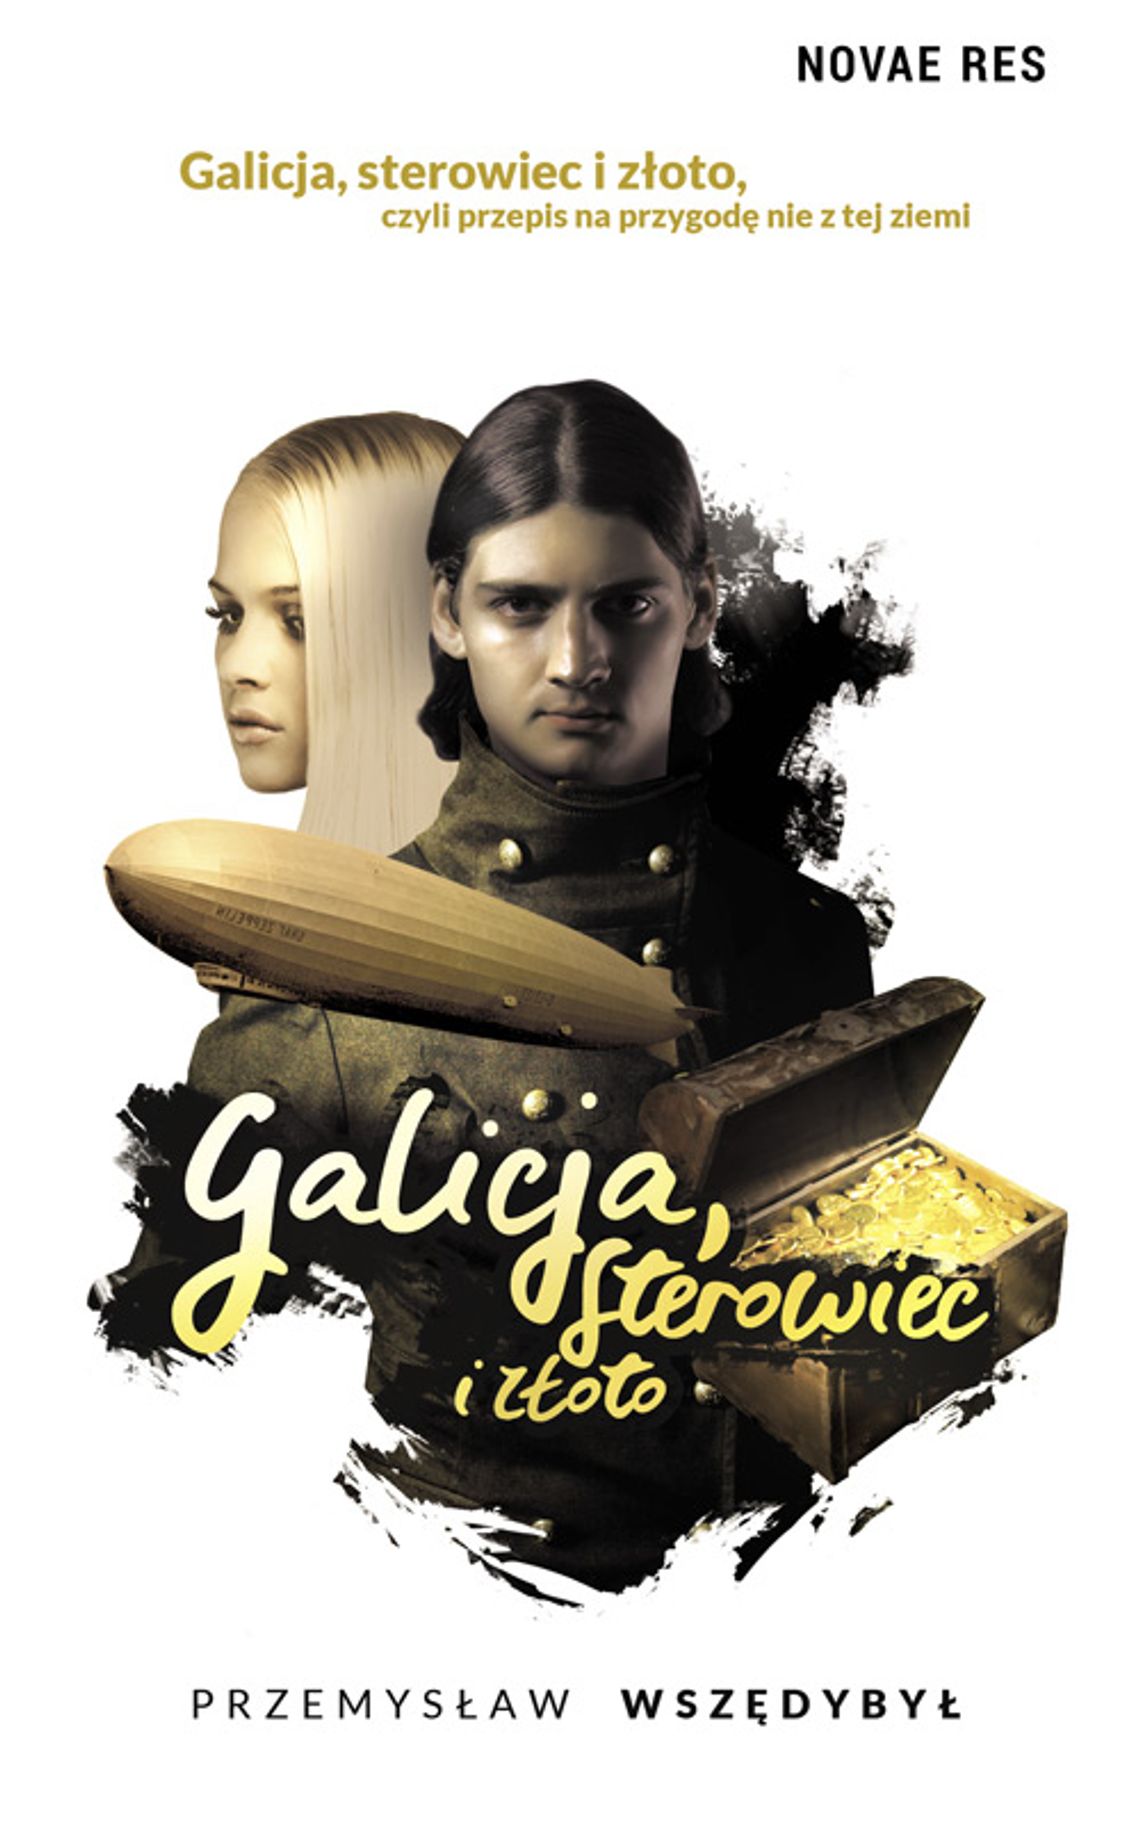 Galicja, sterowiec i złoto - mieszkaniec Jelcza-Laskowic napisał książkę